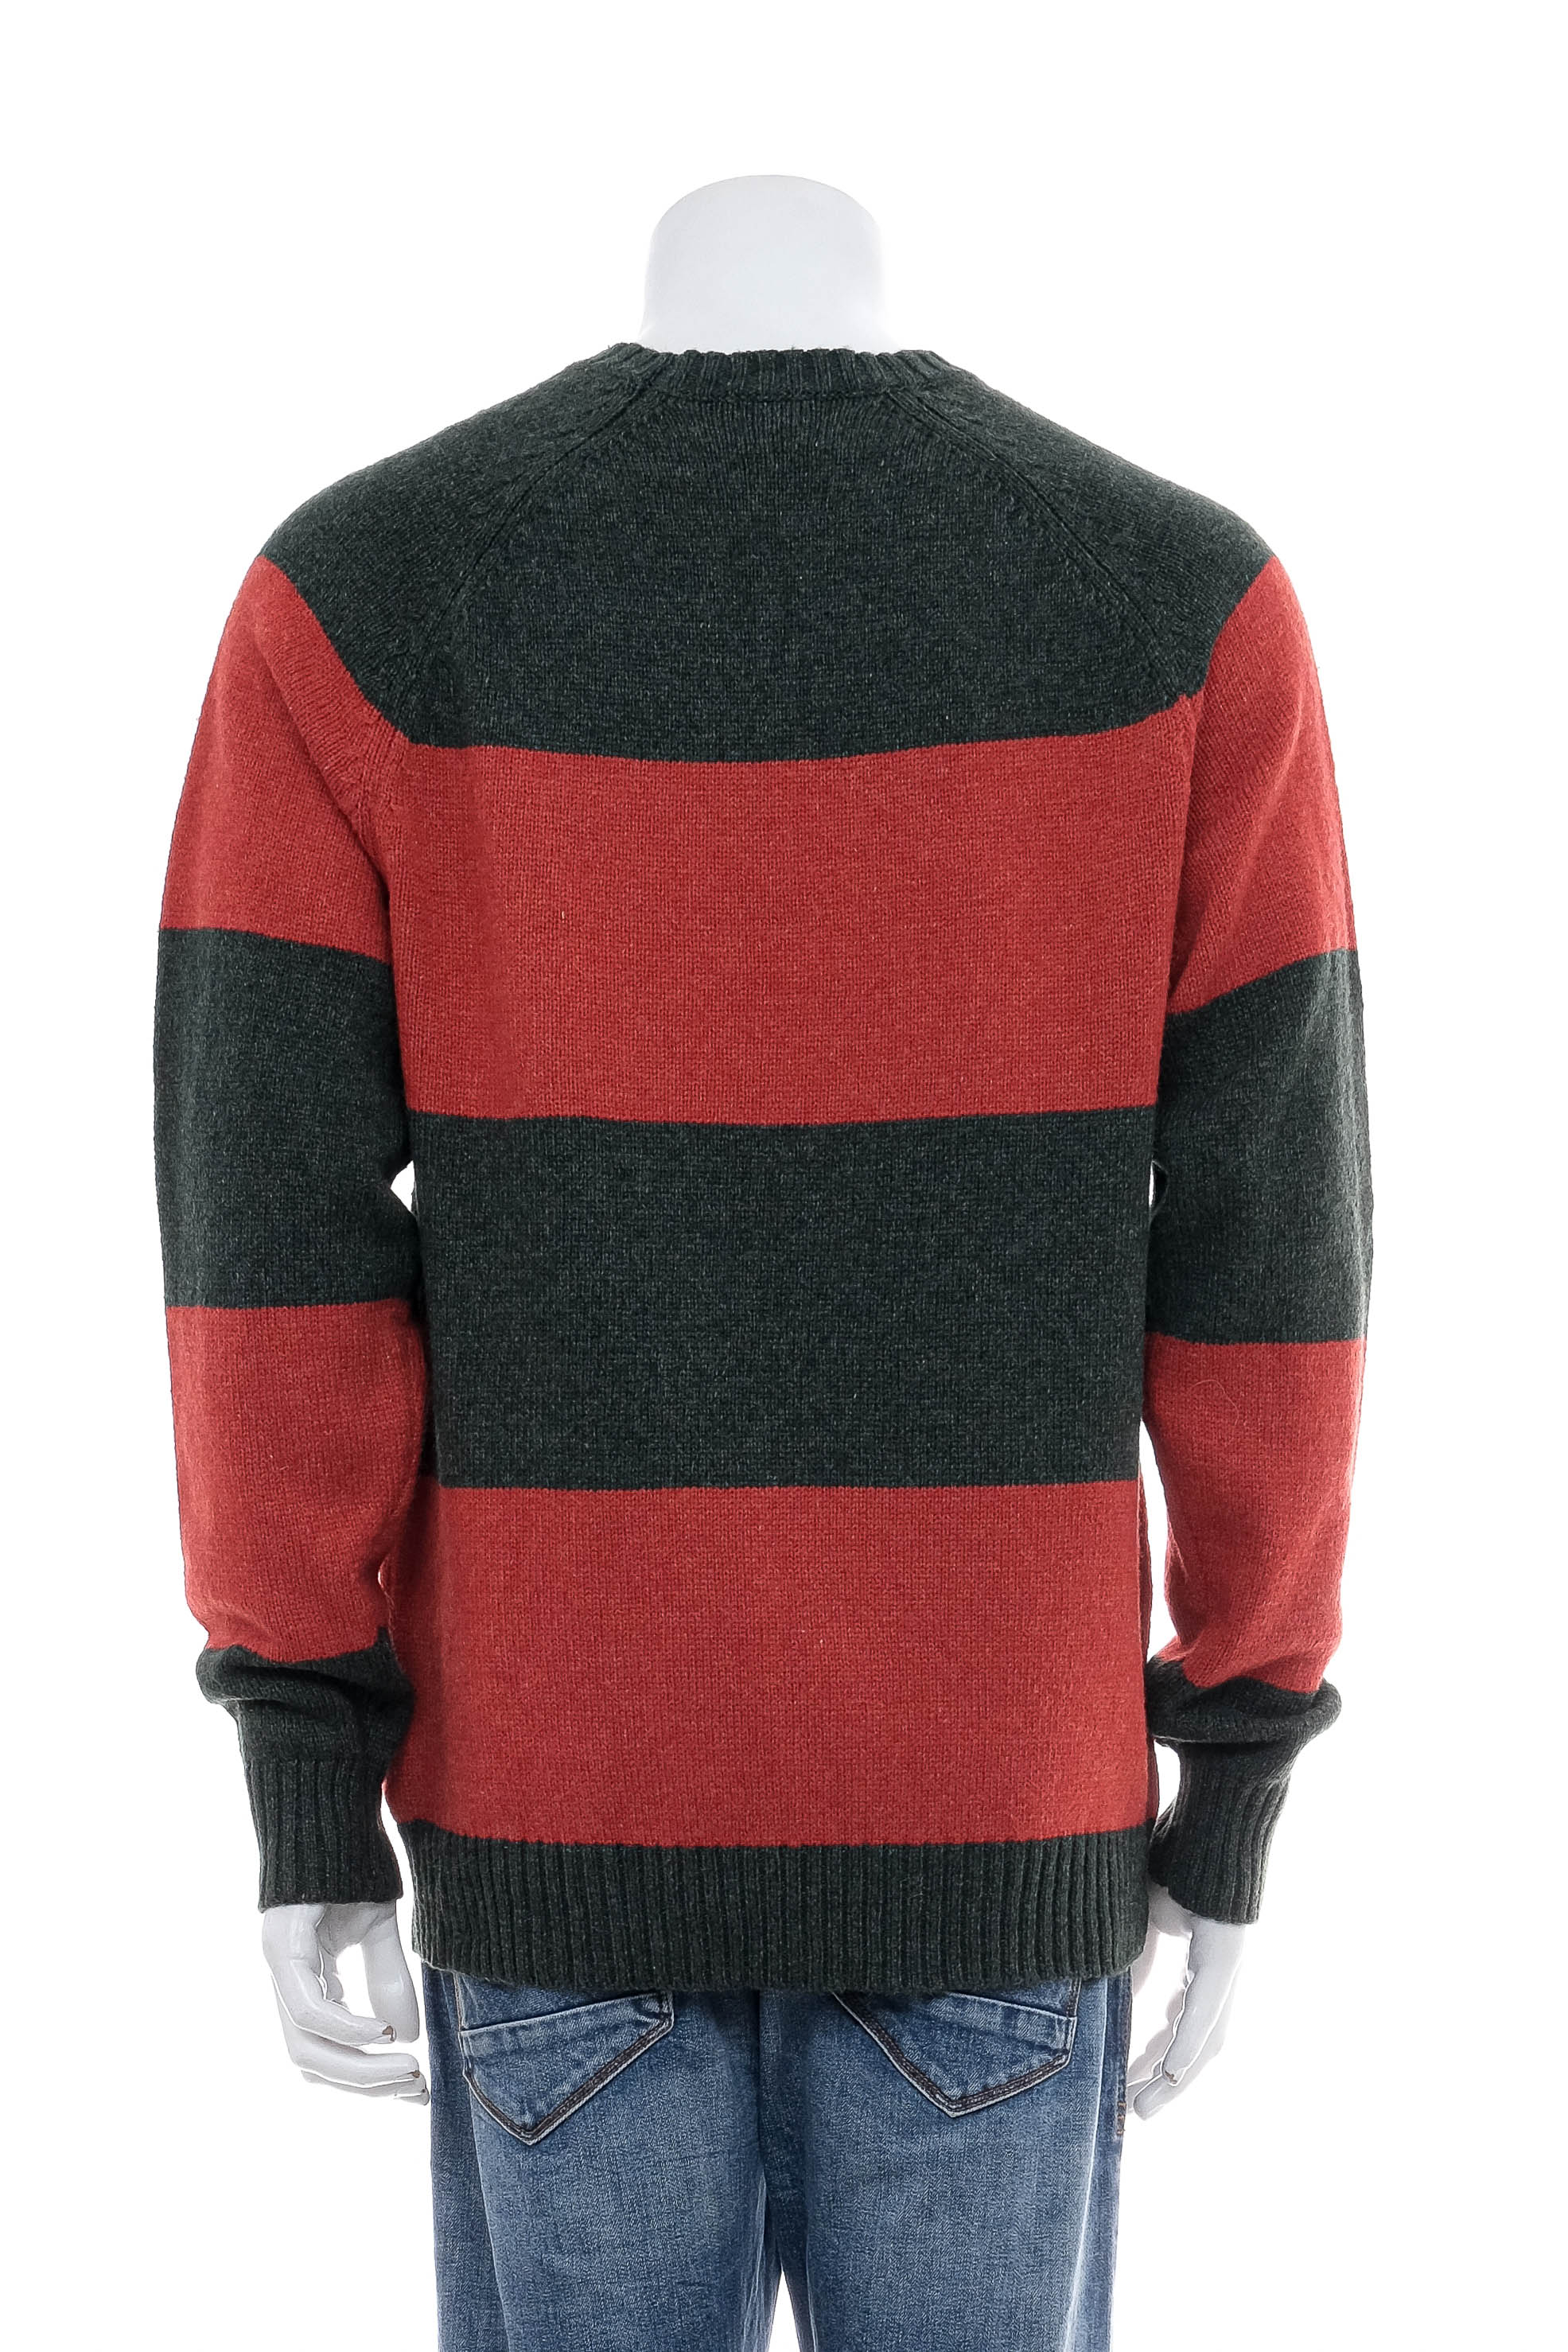 Men's sweater - OLD NAVY - 1